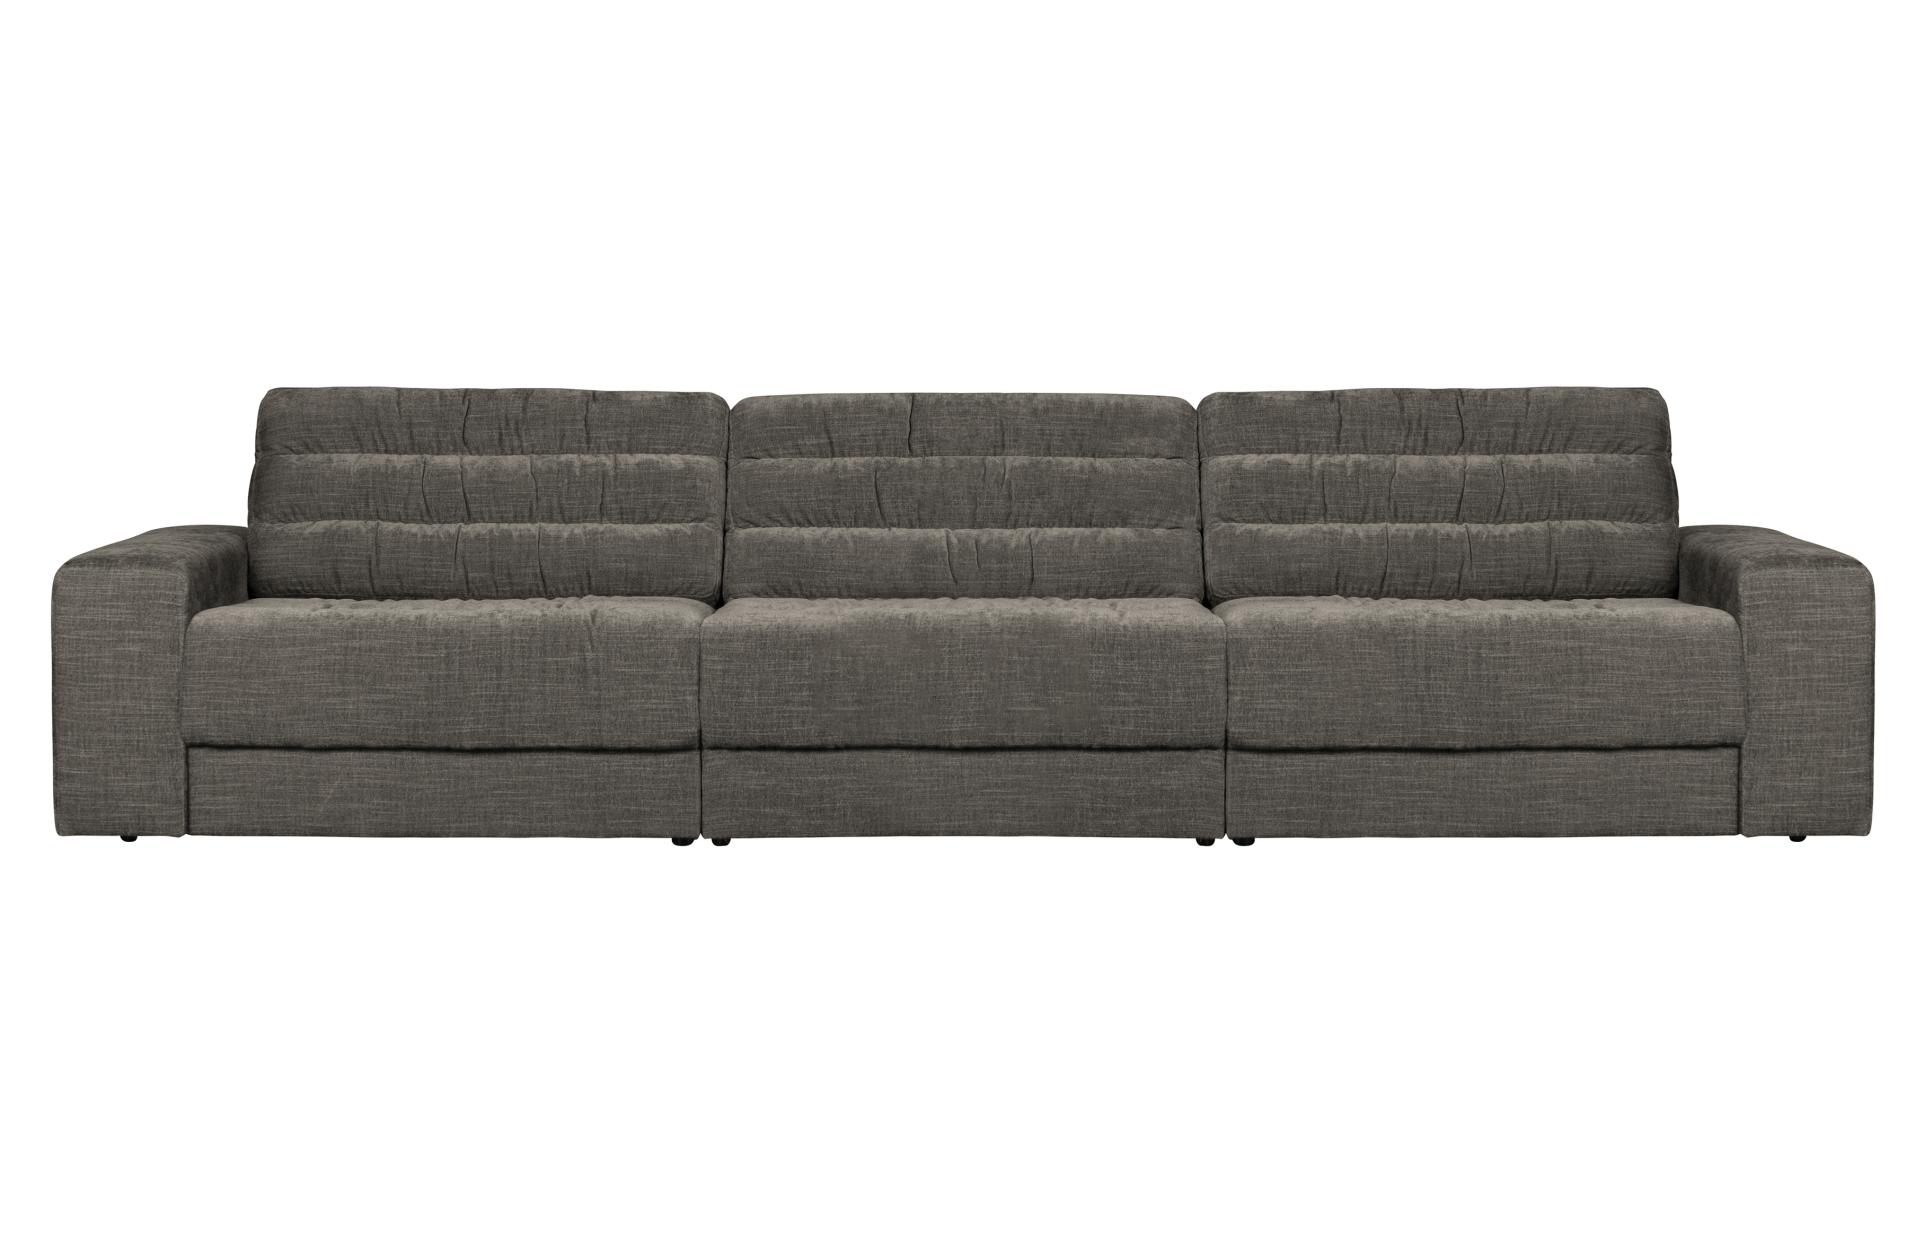 Das Sofa Date überzeugt mit seinem klassischen Design. Gefertigt wurde es aus einem Vintage Stoff, welcher einen grauen Farbton besitzen. Das Gestell ist aus Kunststoff und hat eine schwarze Farbe. Das Sofa hat eine Breite von 316 cm.